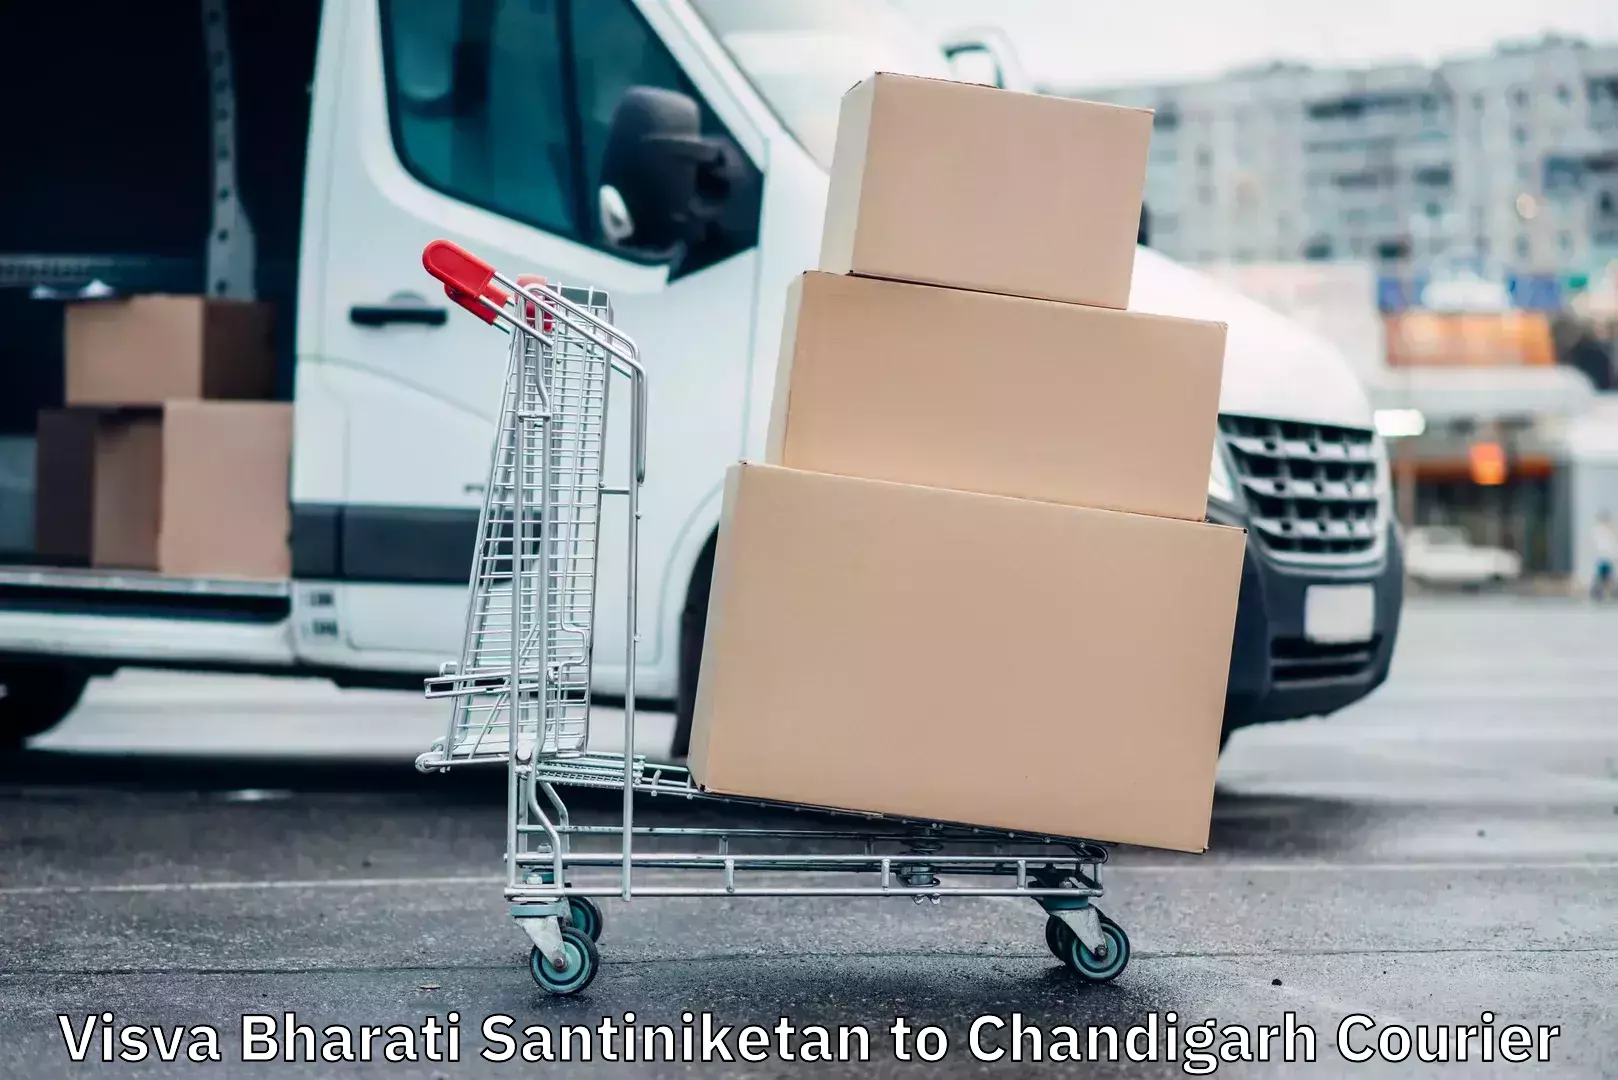 Next-day delivery options Visva Bharati Santiniketan to Chandigarh